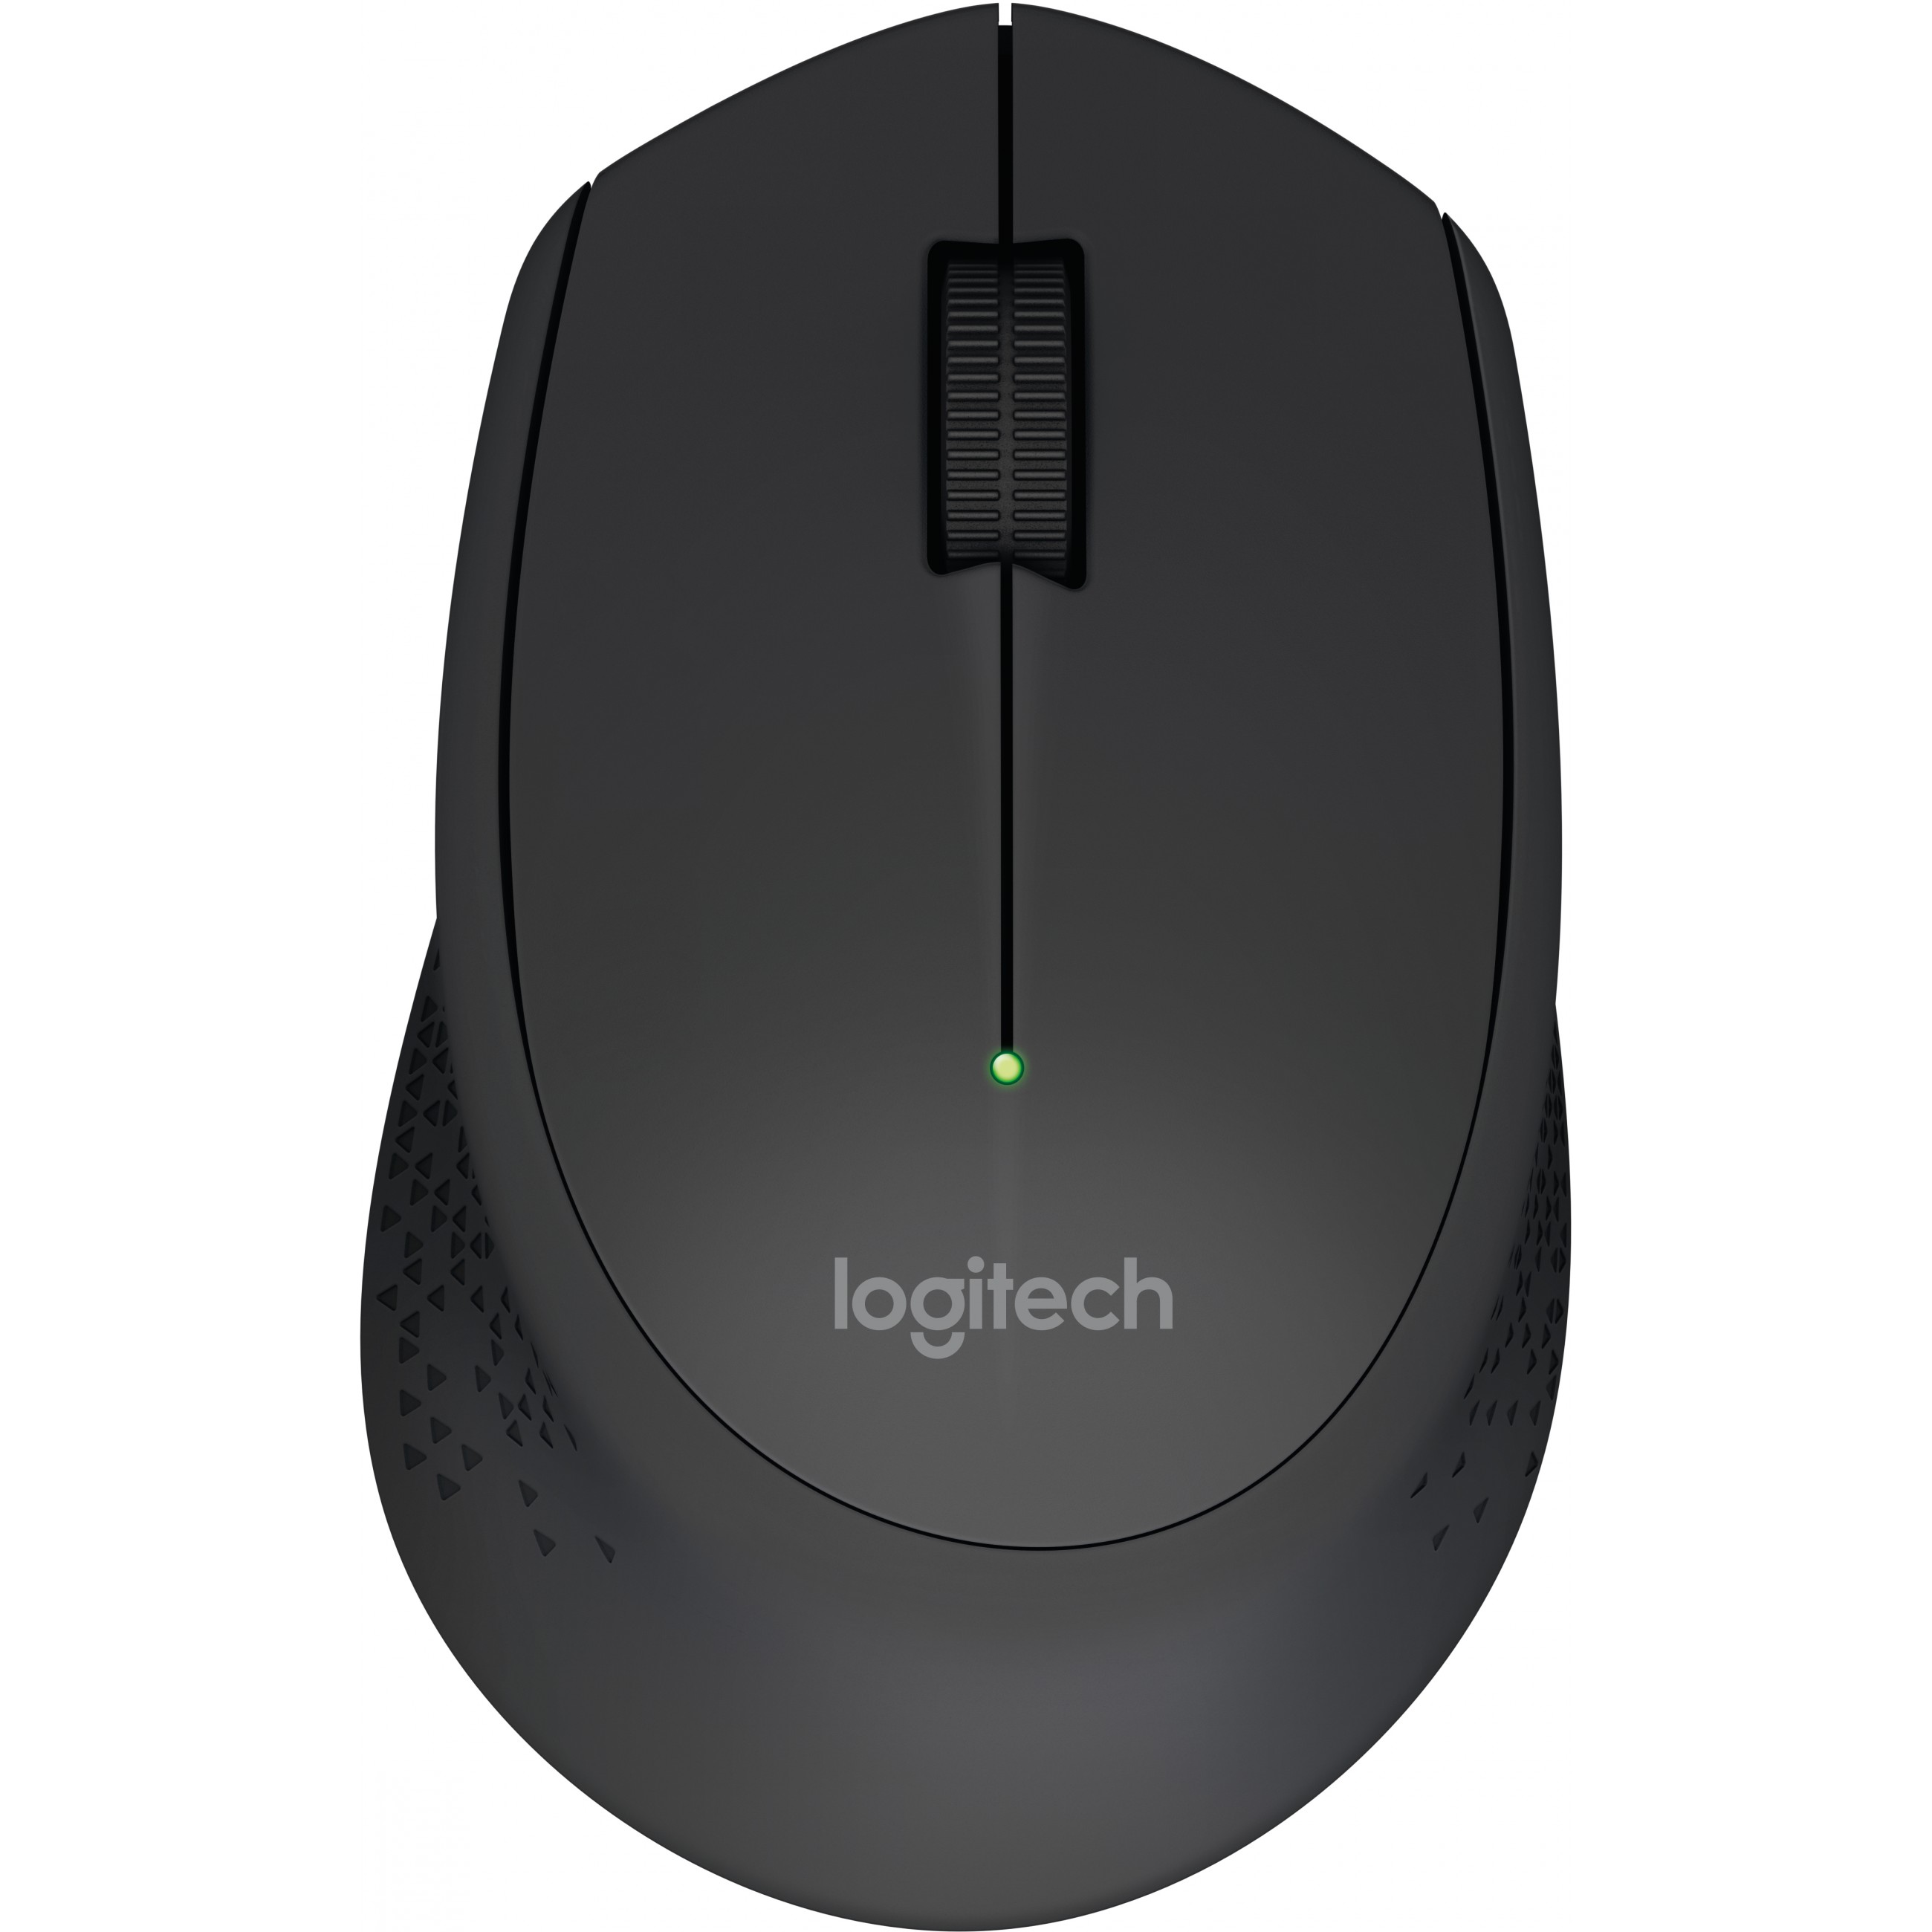 Logitech M280 mouse